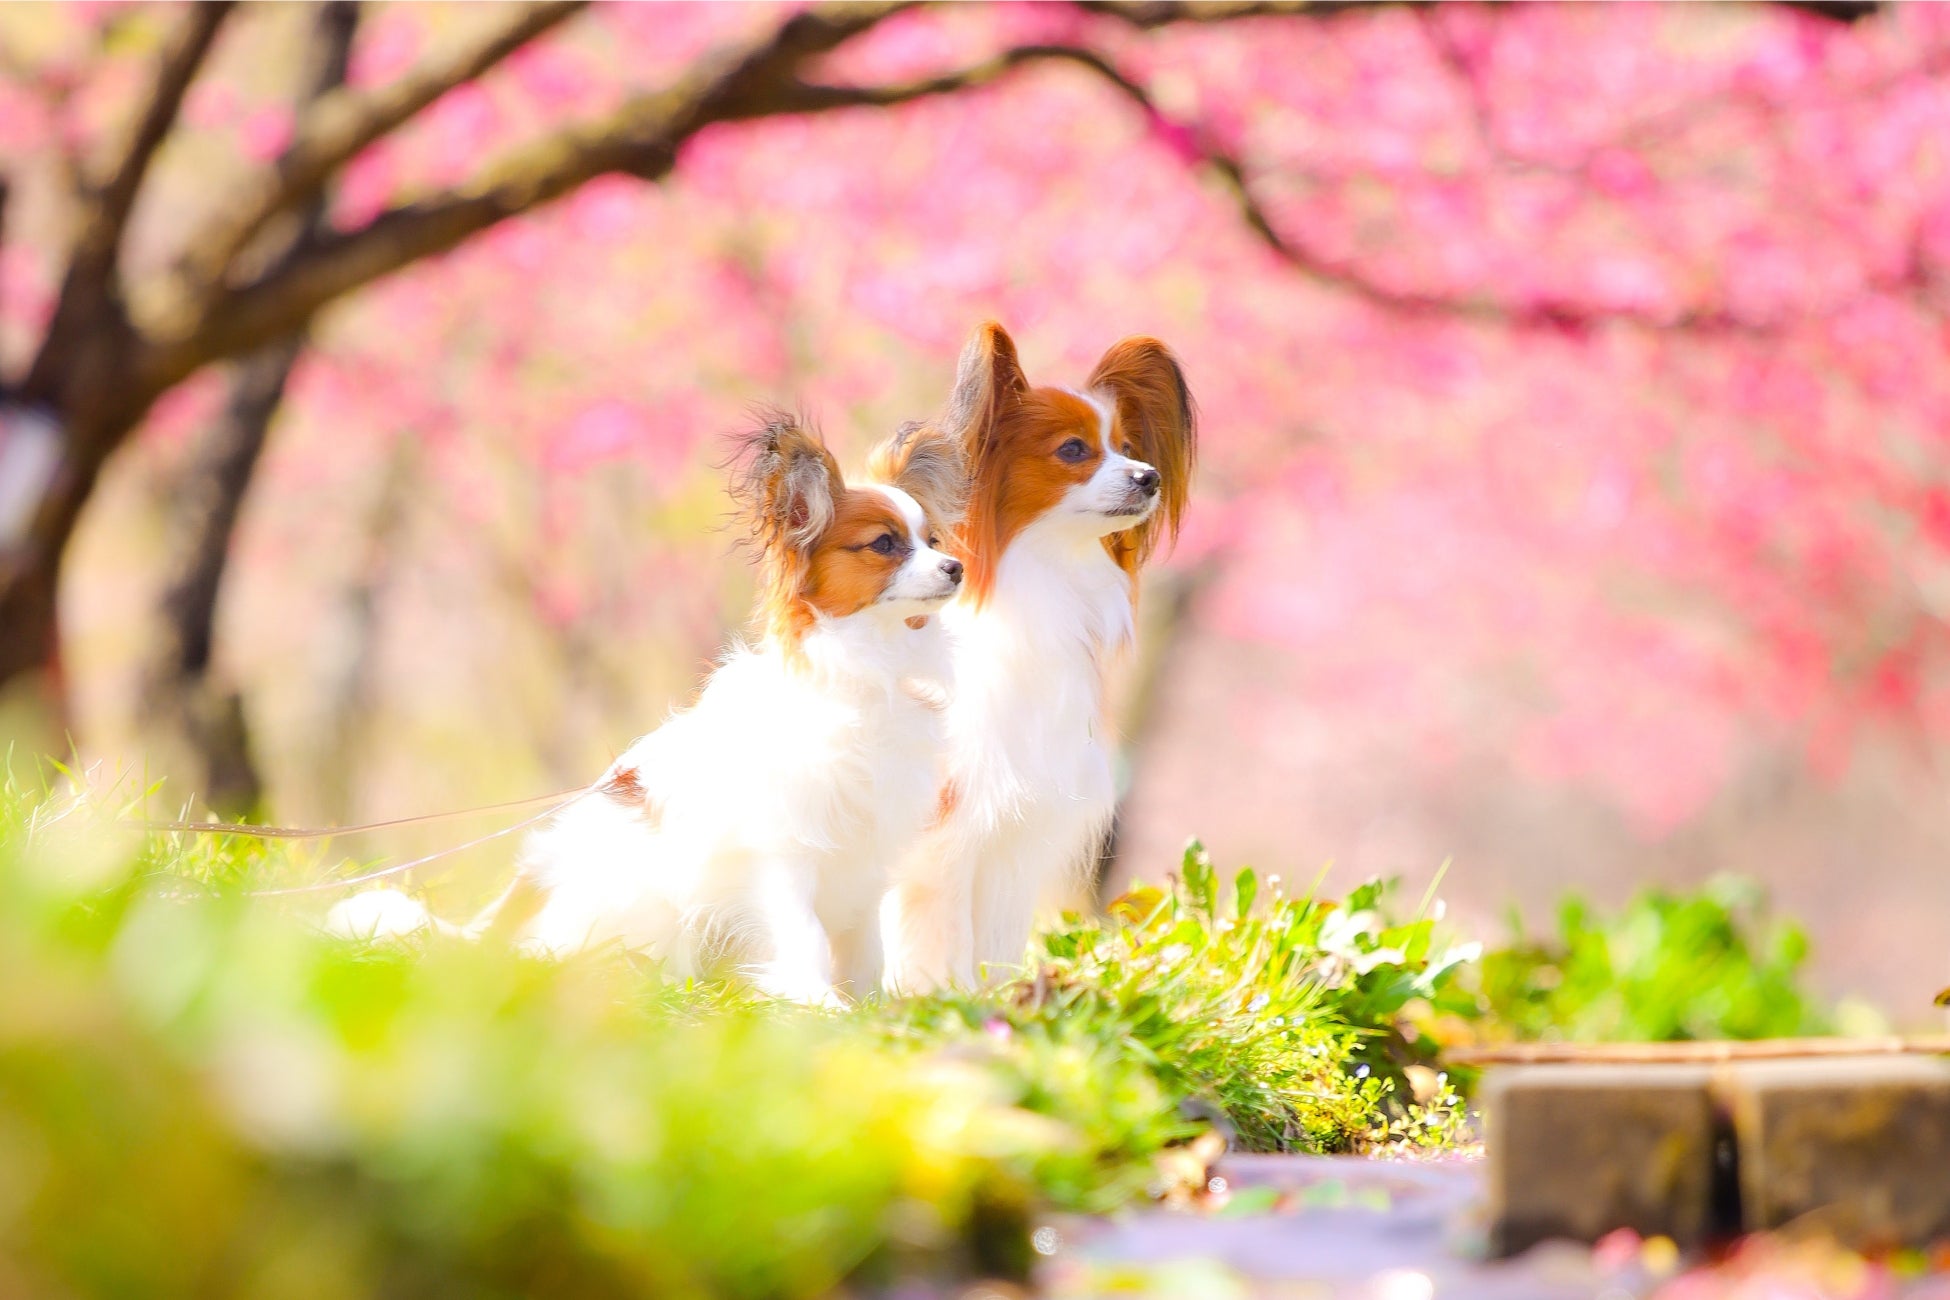 東京マリオットホテル 桜降る御殿山で、愛犬との思い出フォトを「Sakura Shooting with Dog」を開催